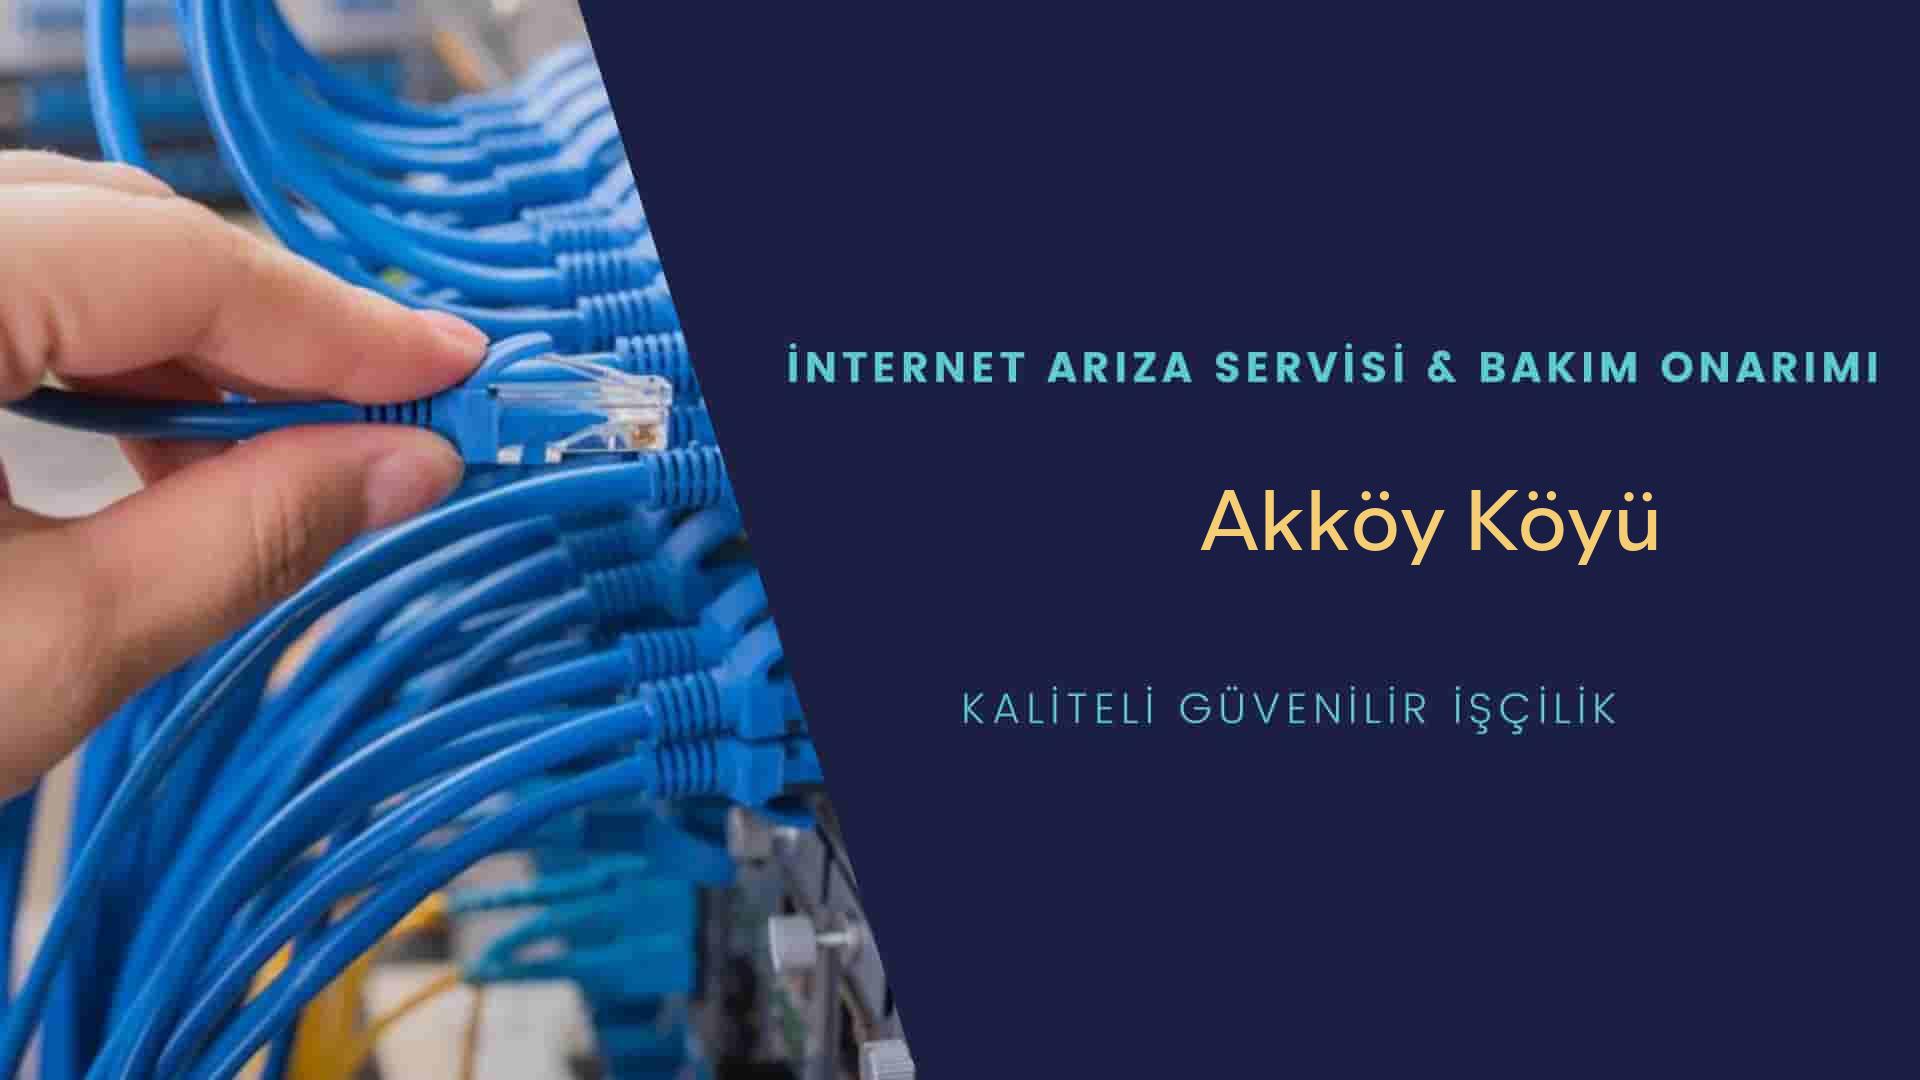 Akköy Köyü internet kablosu çekimi yapan yerler veya elektrikçiler mi? arıyorsunuz doğru yerdesiniz o zaman sizlere 7/24 yardımcı olacak profesyonel ustalarımız bir telefon kadar yakındır size.